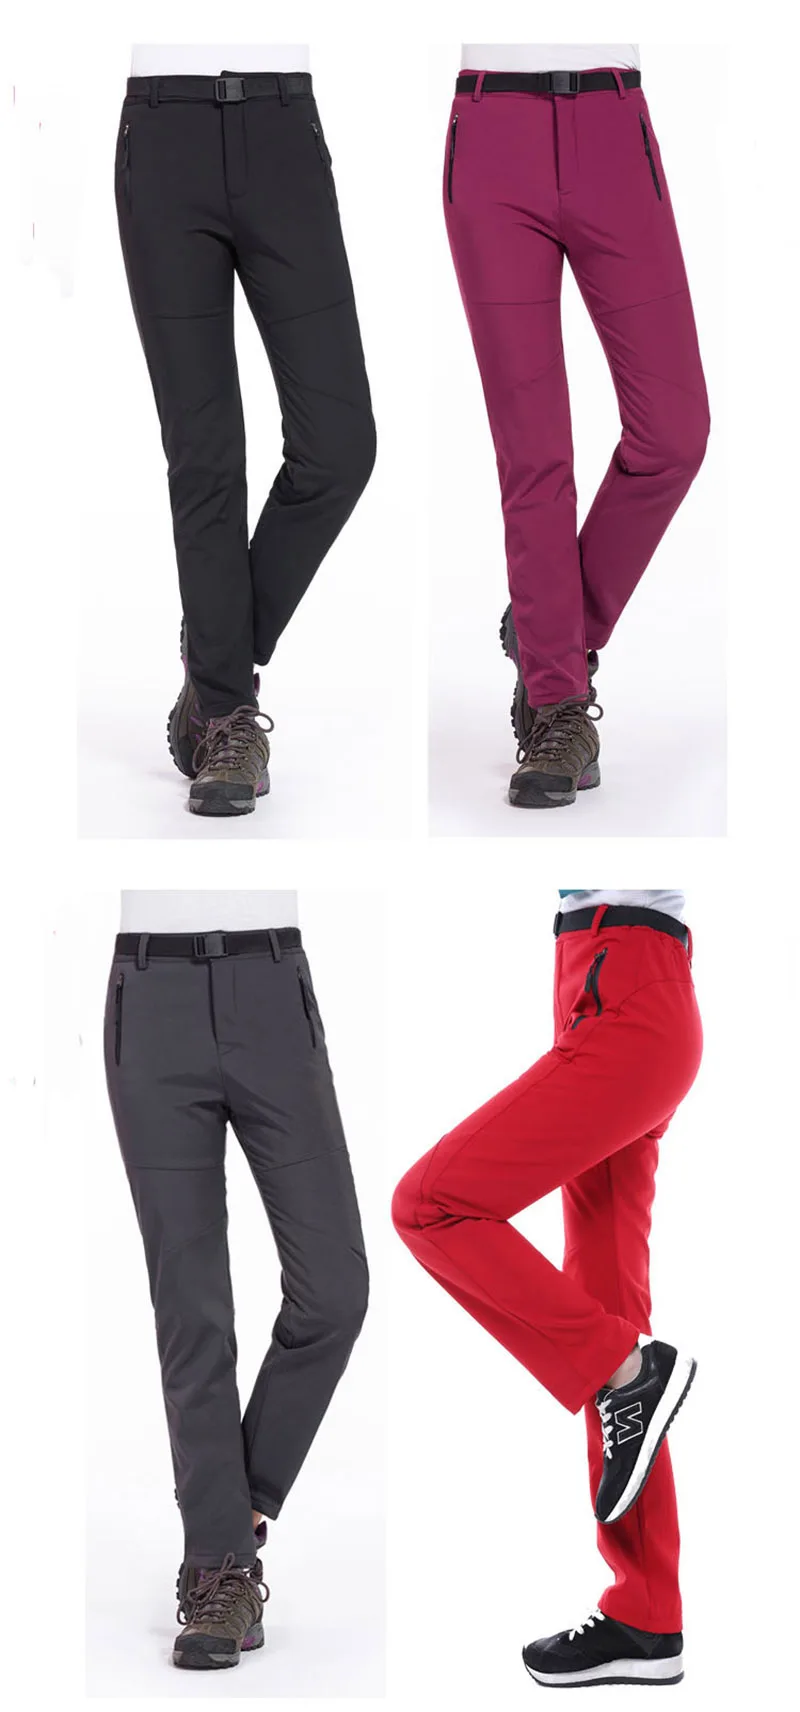 Уличные камуфляжные флисовые походные брюки для женщин и мужчин, водонепроницаемые спортивные штаны, термо штаны для кемпинга, походов, лыжного спорта, флисовые брюки